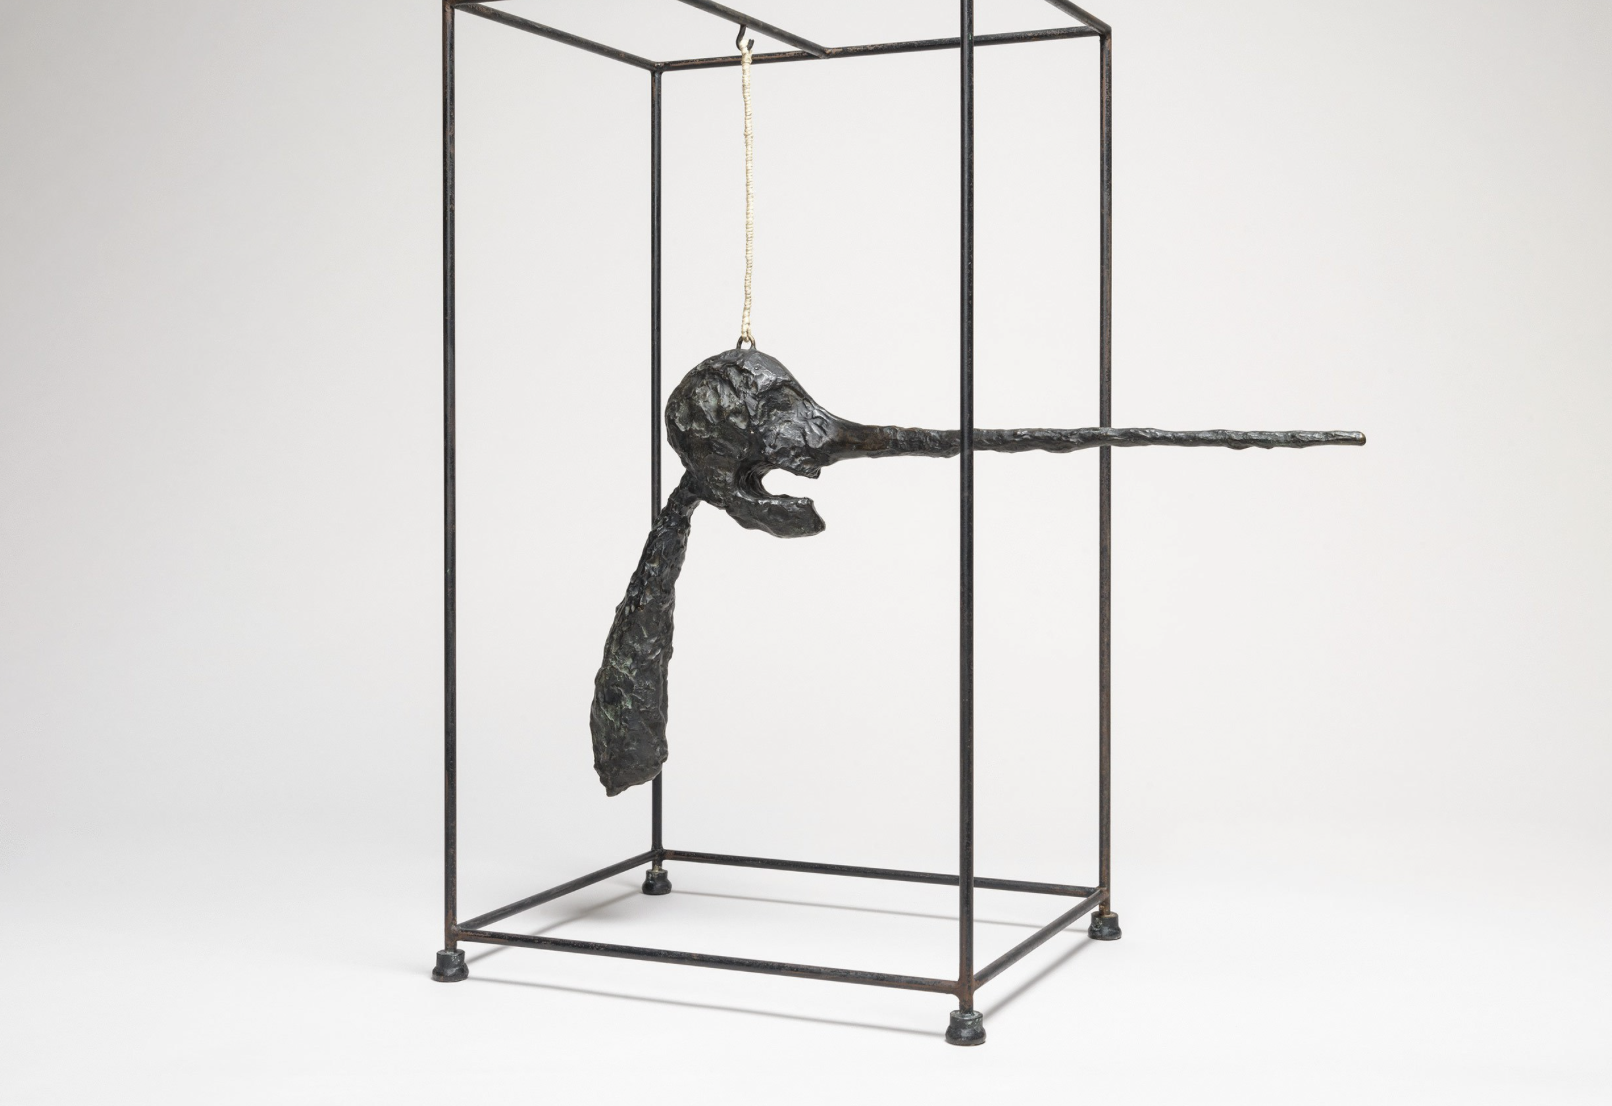 Alberto Giacometti, Le Nez, 1947 (version de 1949), Bronze, 80,9 x 70,5 x 40,6 cm, coll.Fondation Giacometti, Paris. © Succession Giacometti (Fondation Giacometti, Paris et ADAGP, Paris)